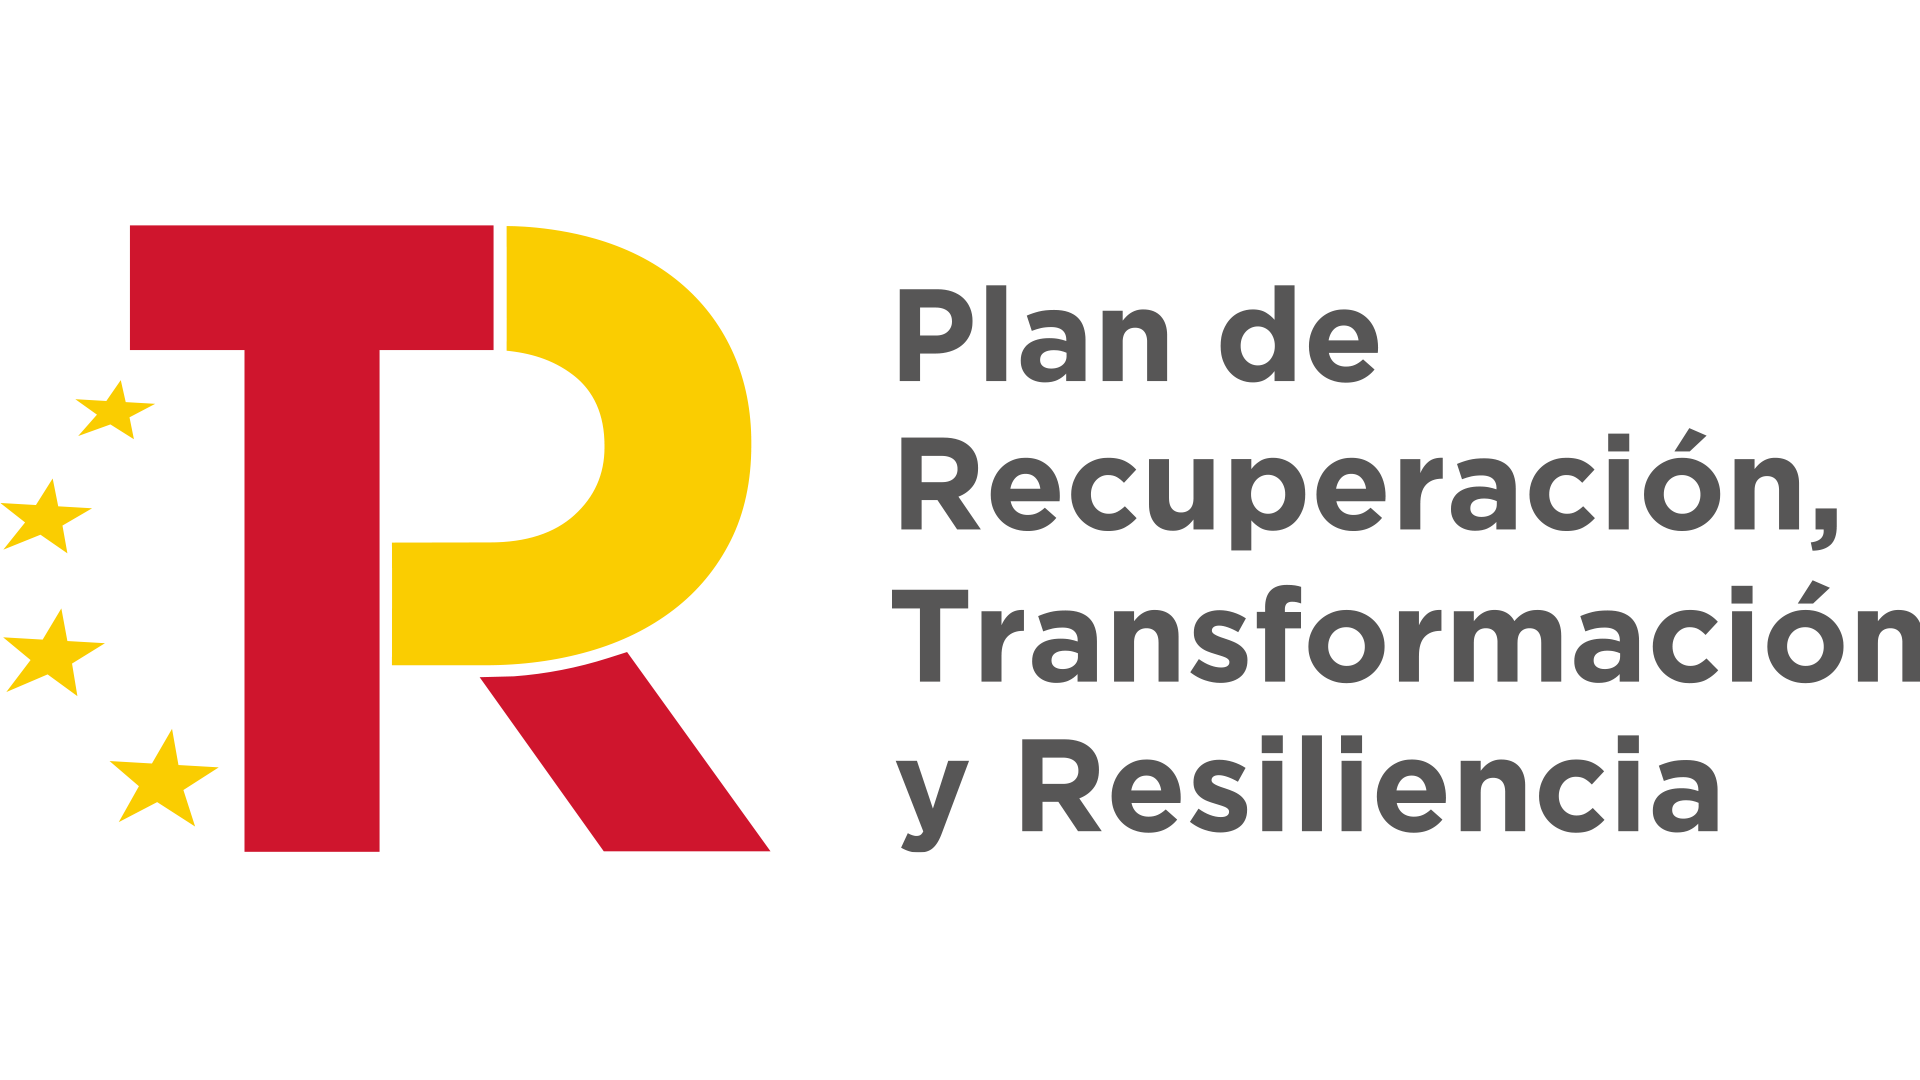 Plan de recuperación, transformación e resiliencia